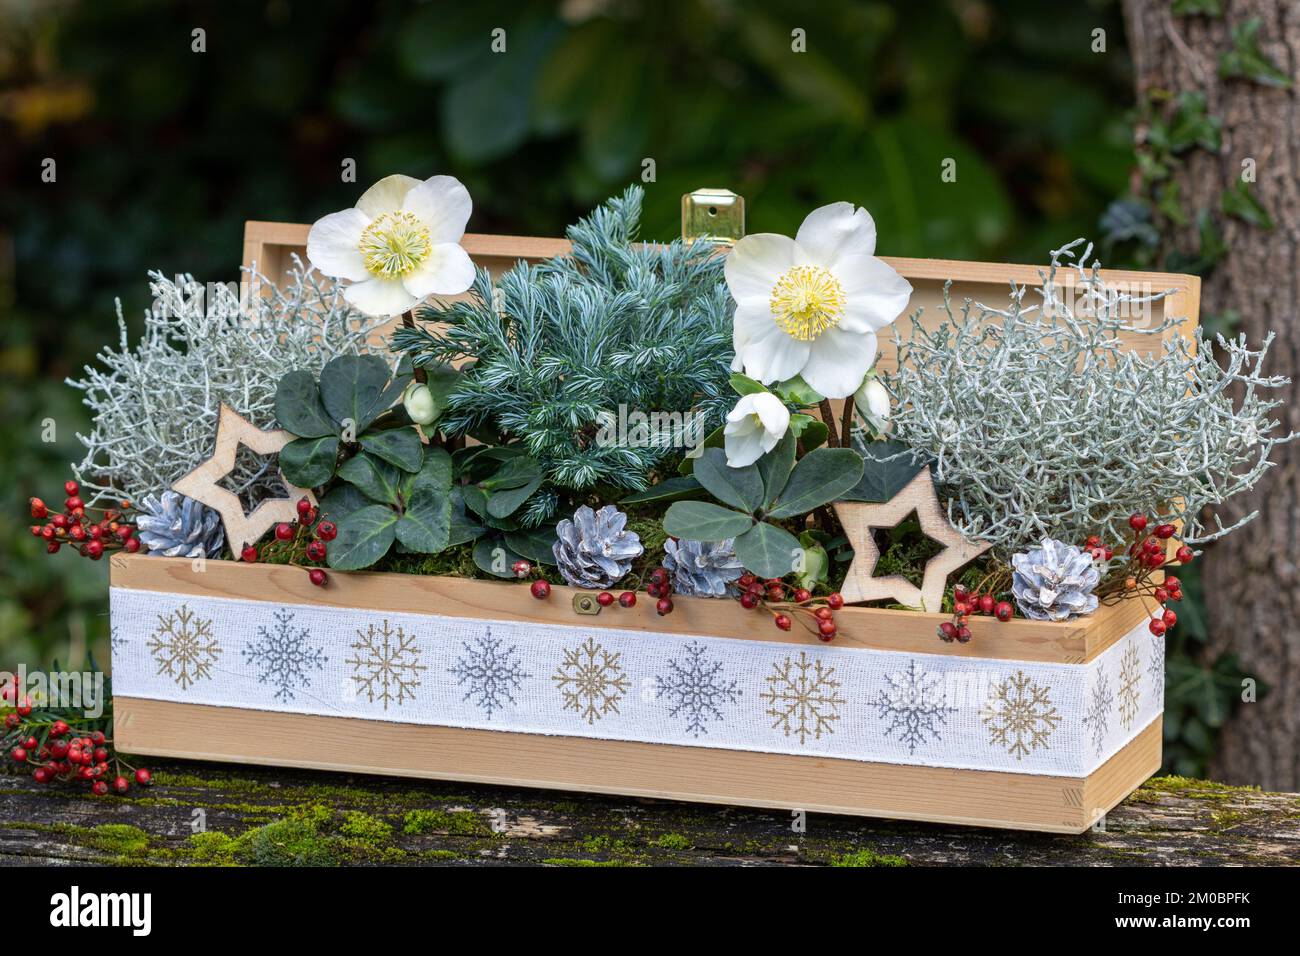 Décoration de noël avec helleborus niger, buisson et cyprès japonais dans une boîte en bois Banque D'Images